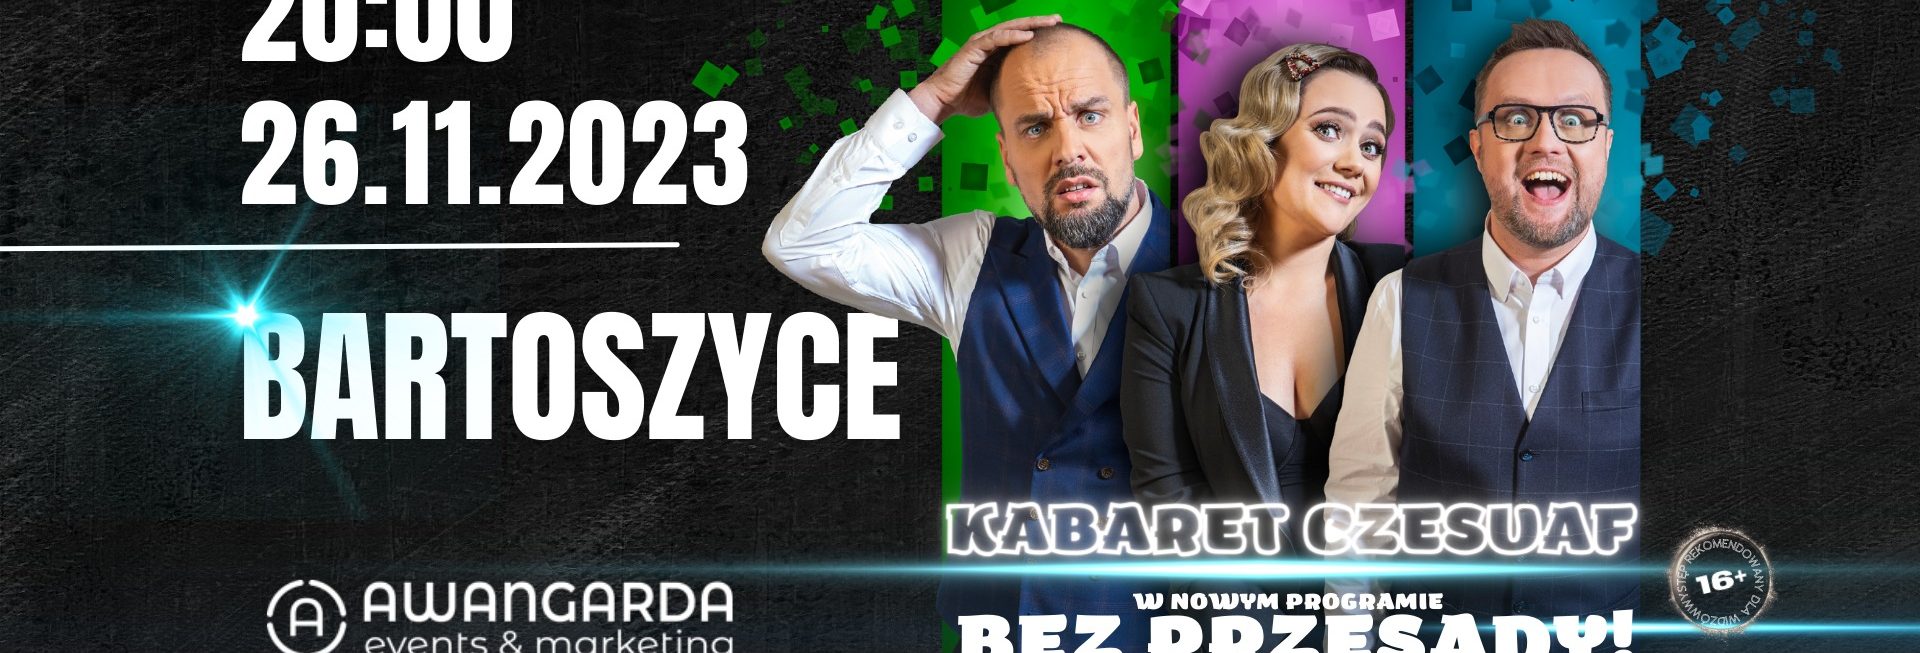 Plakat zapraszający w niedzielę 26 listopada 2023 r. do Bartoszyc na występ Kabaretu Czesuaf "Bez przesady" Bartoszyce 2023. 